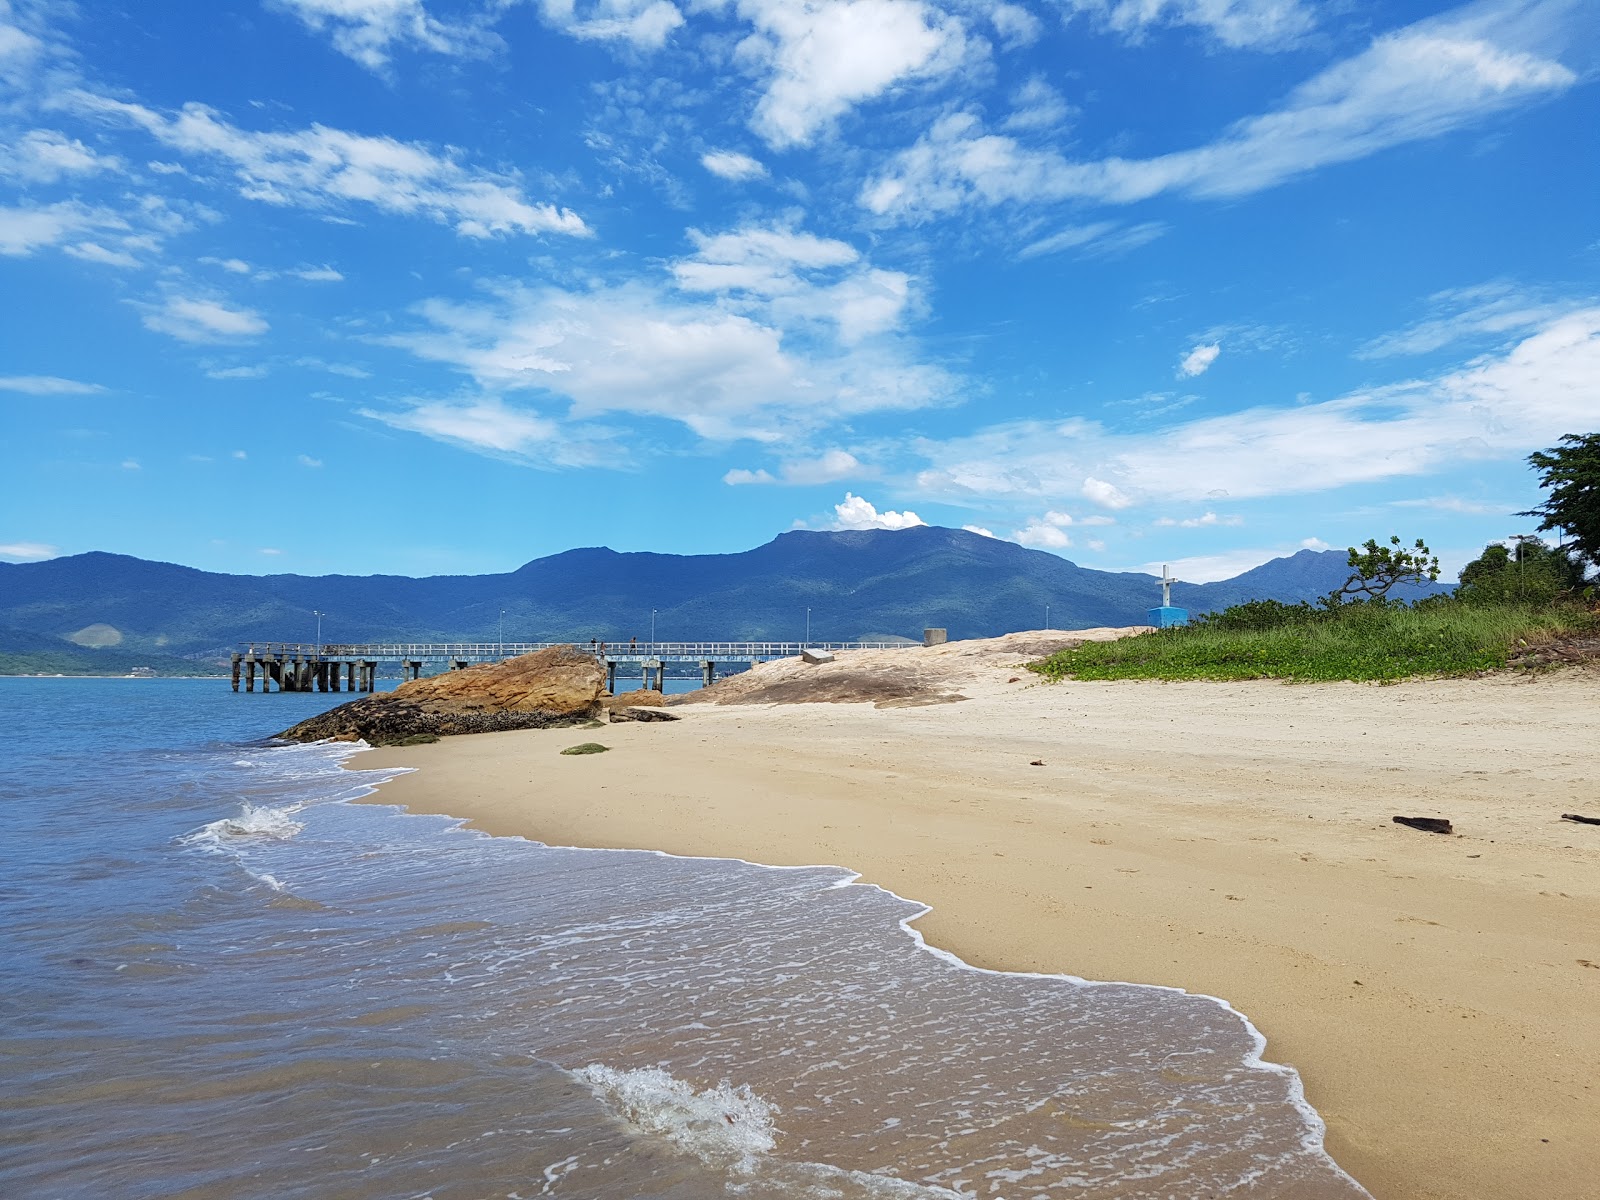 Fotografie cu Plaja Pontal da Cruz - locul popular printre cunoscătorii de relaxare